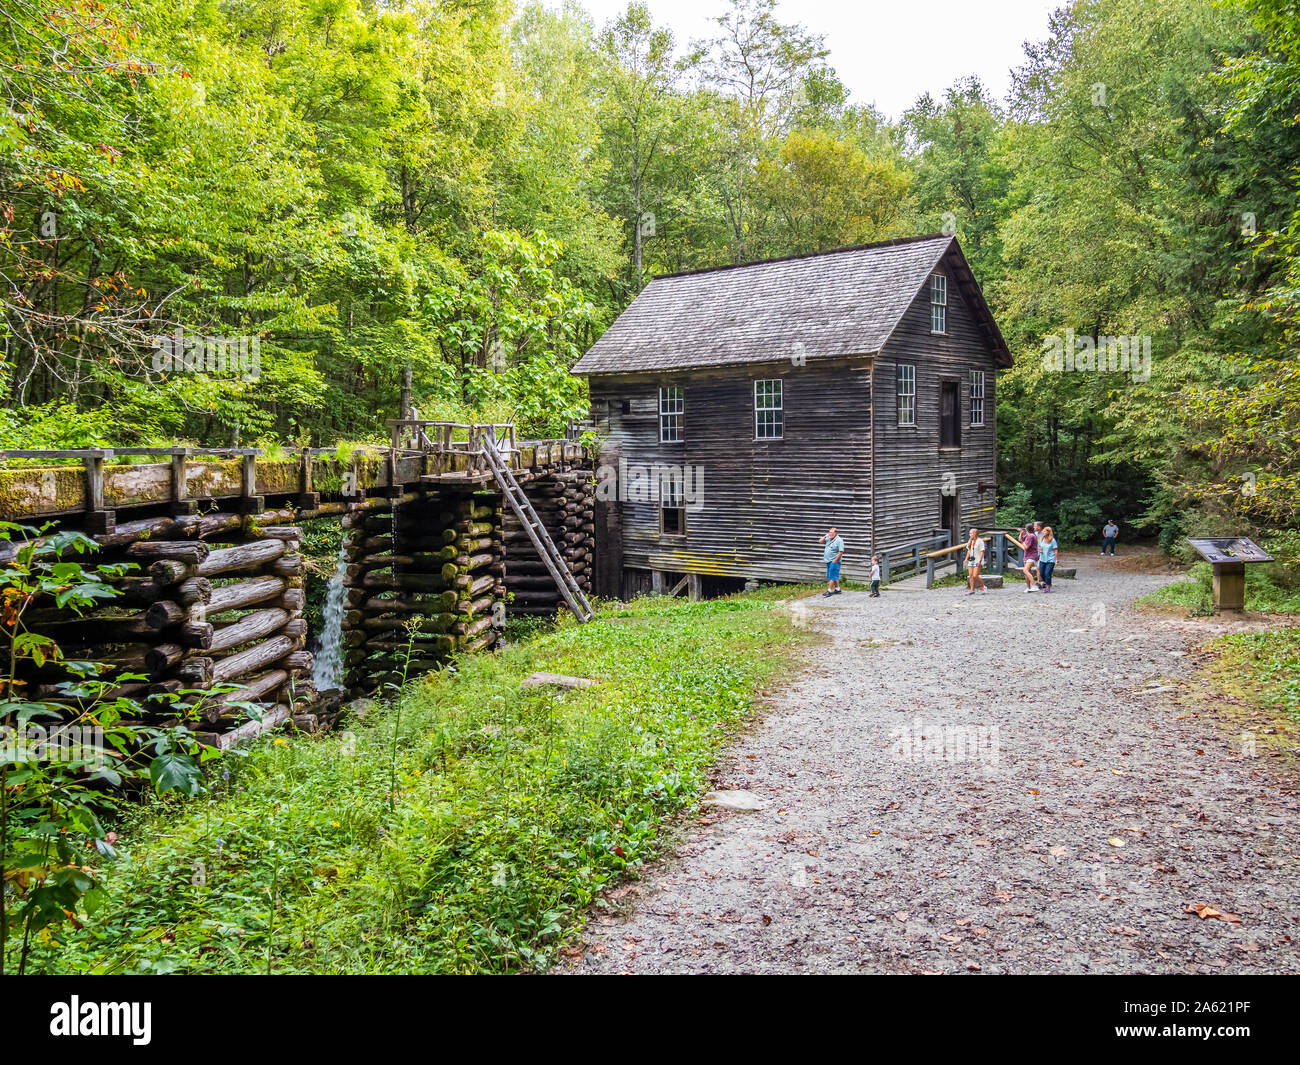 Mingus Mill. Eine historische Grist Mill 1886 in Great Smoky Mountains National Park in North Carolina in den Vereinigten Staaten aufgebaut Stockfoto